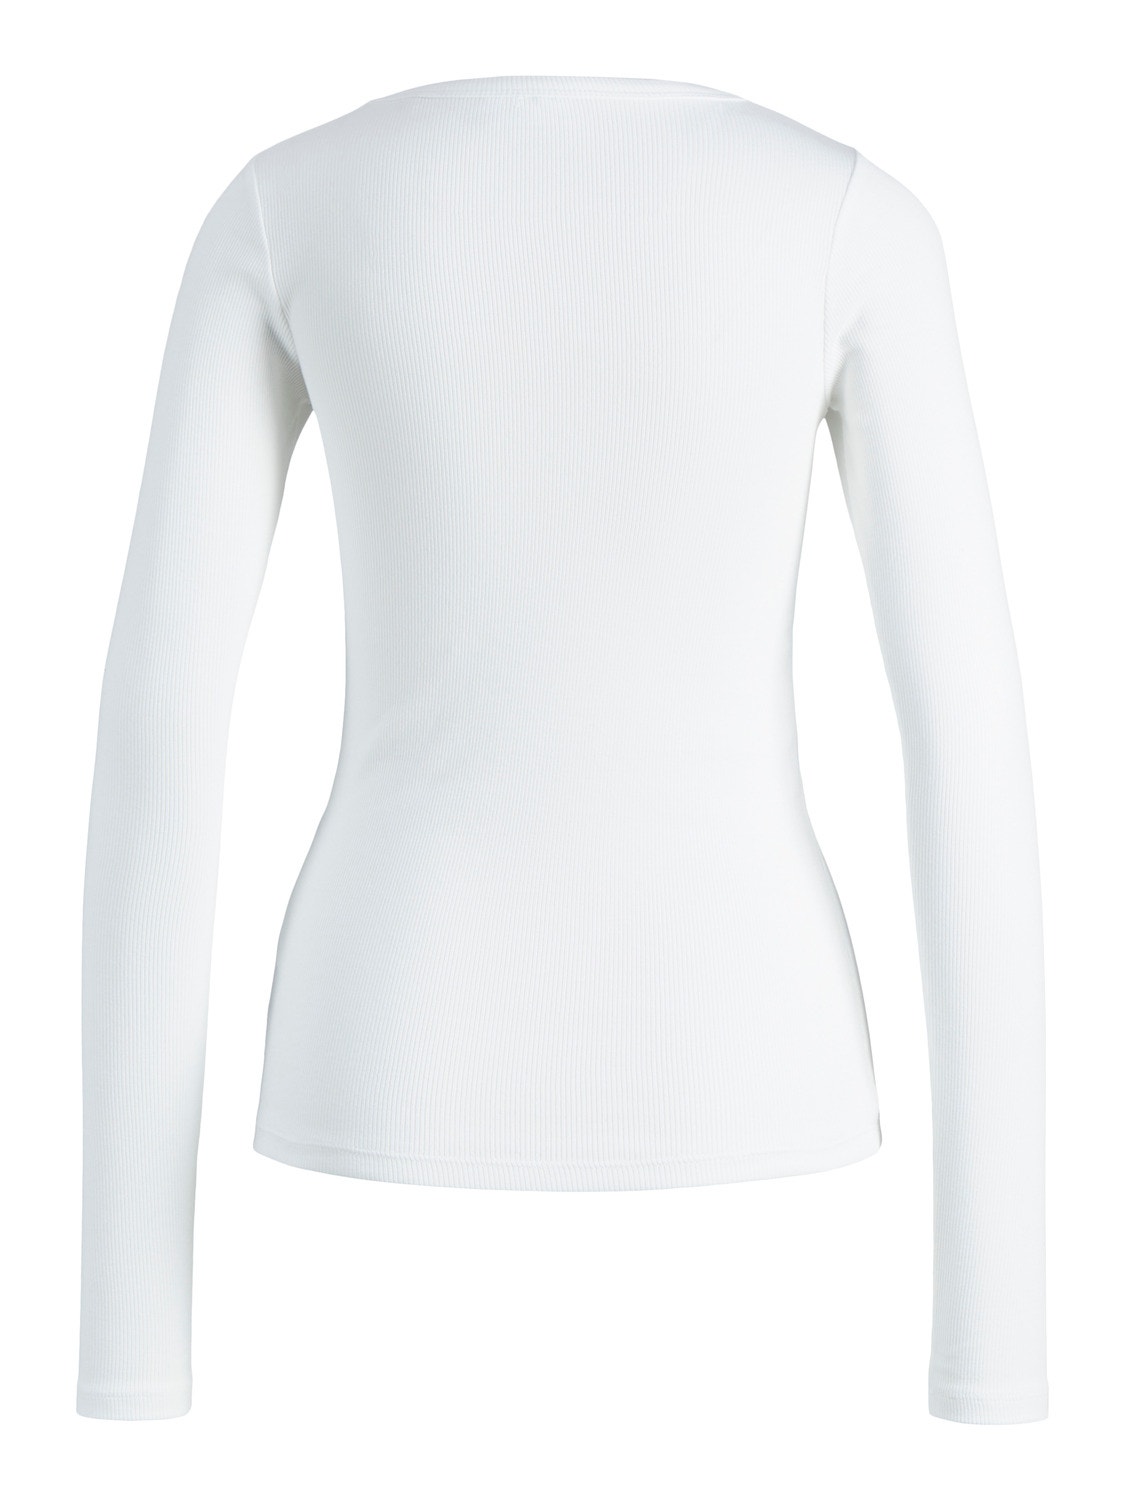 JJXX JXFREYA Camiseta -Bright White - 12200404